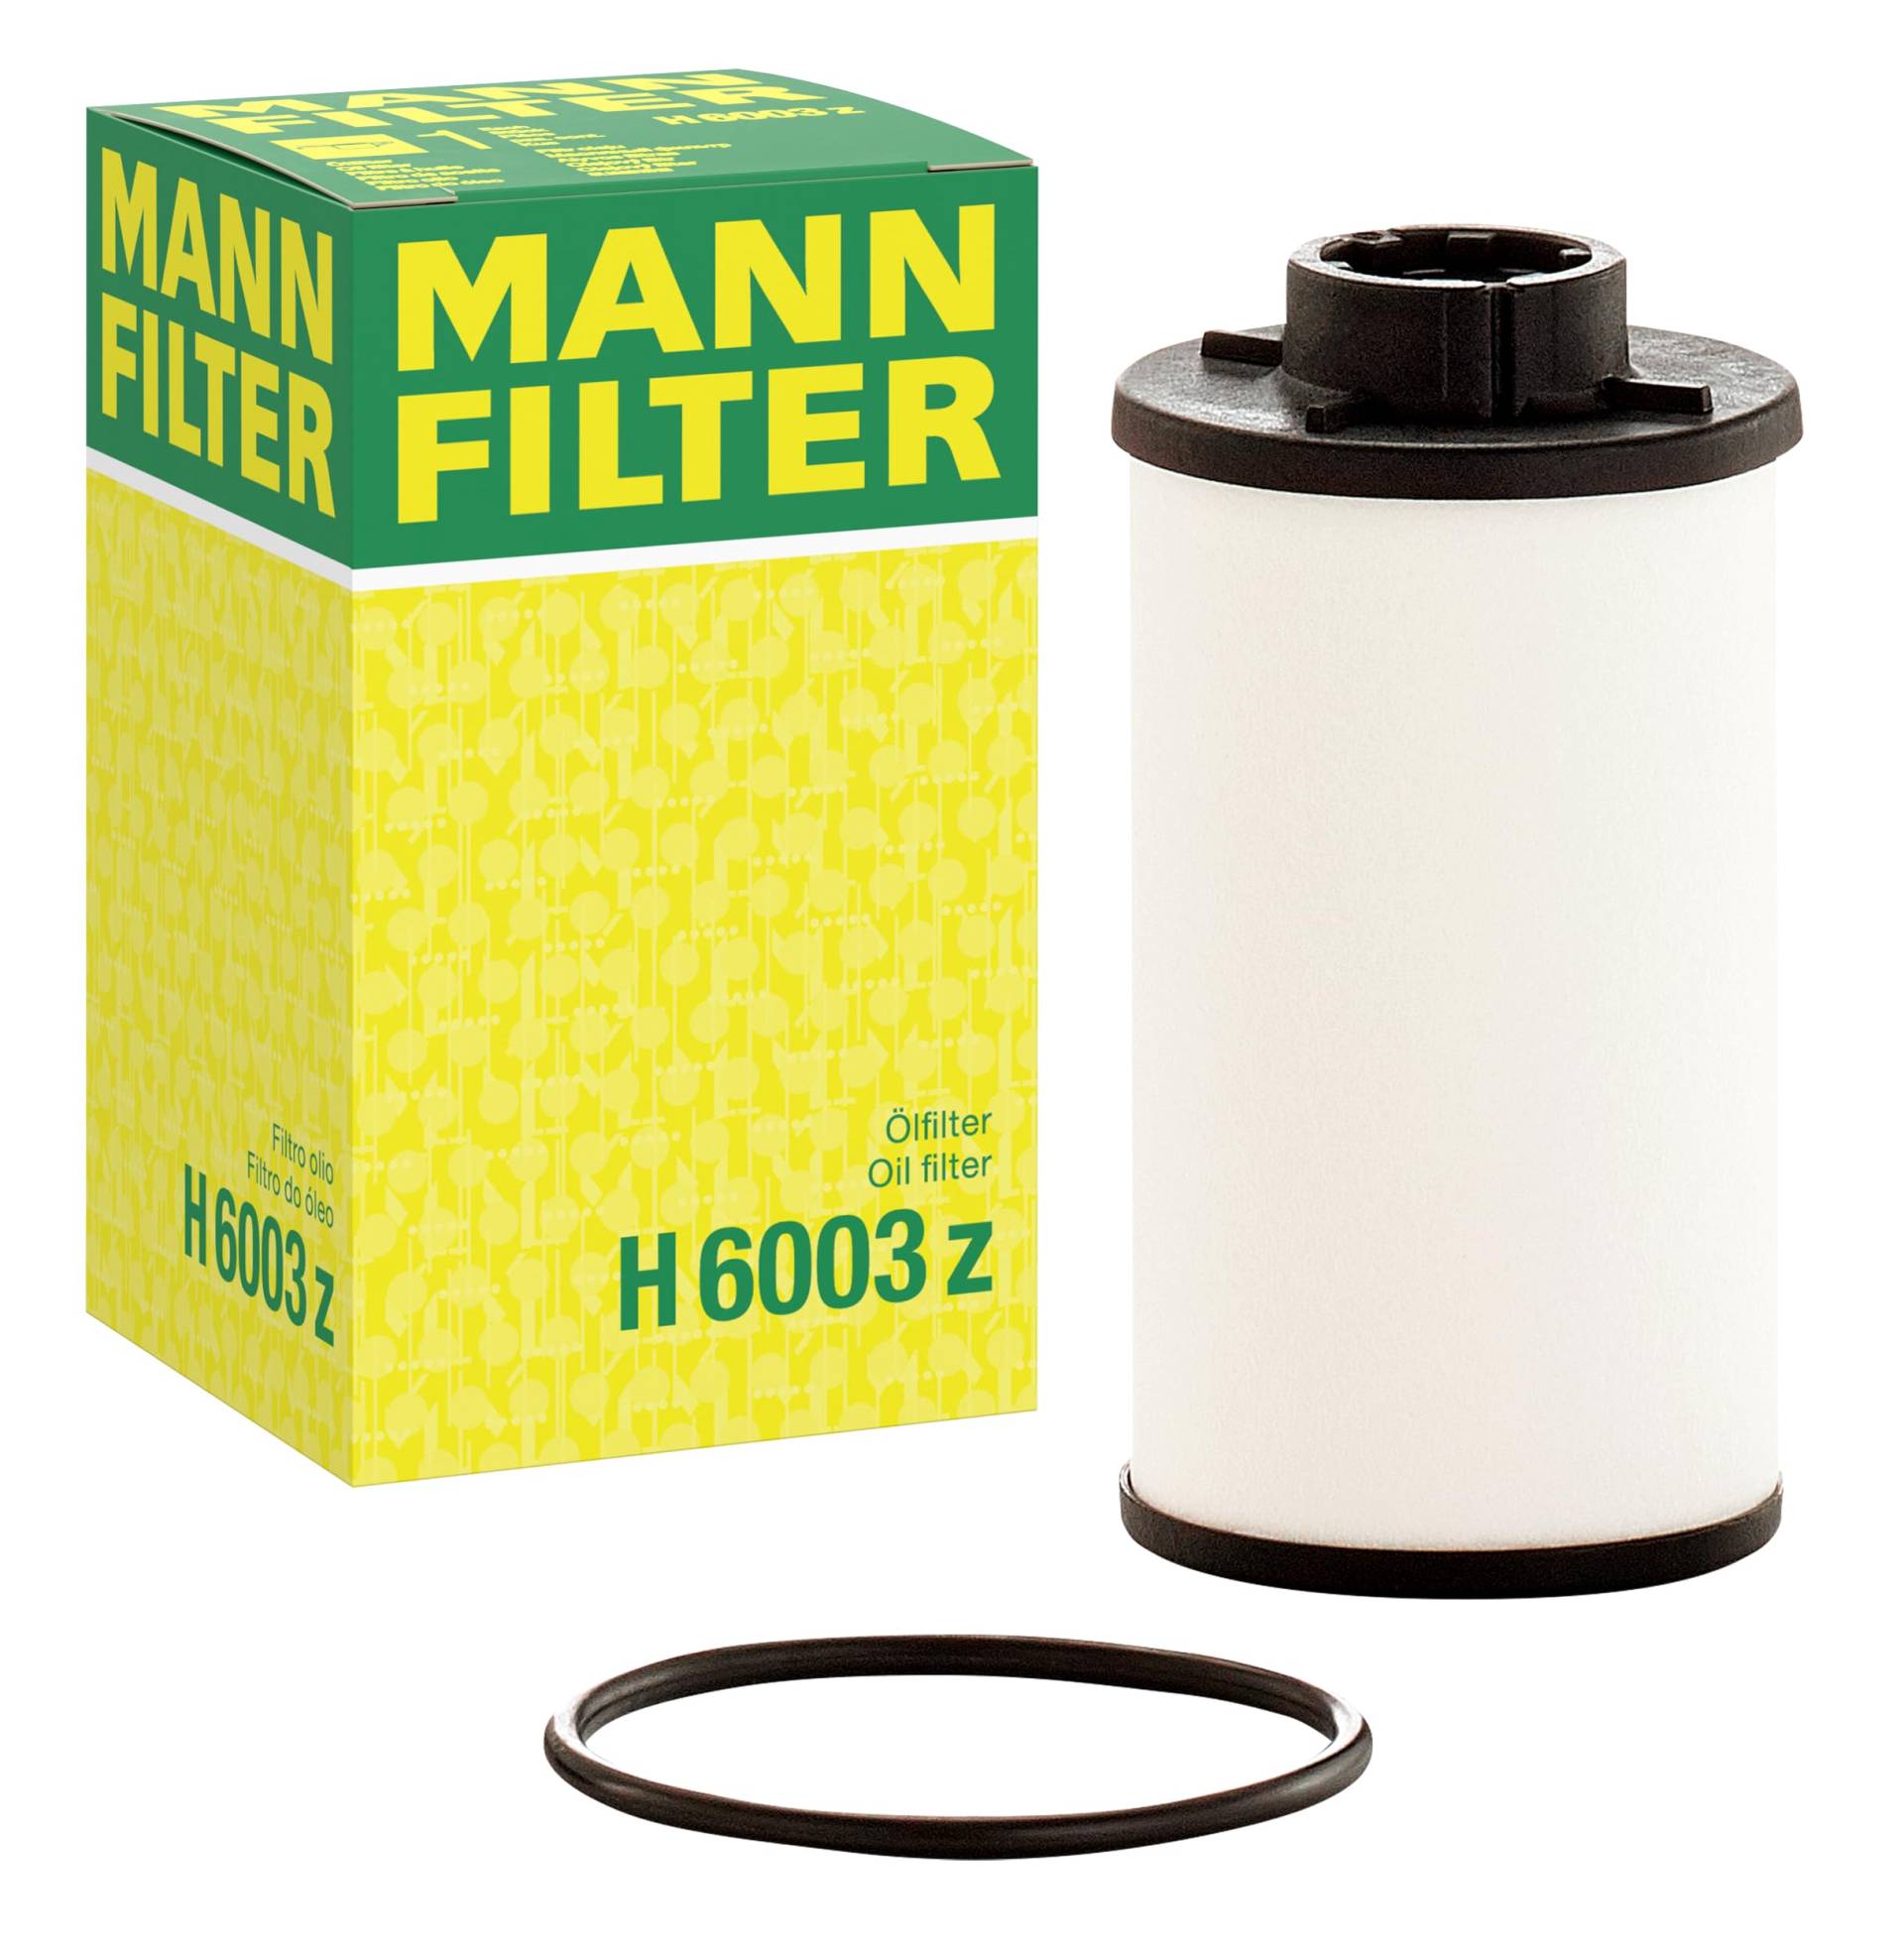 MANN-FILTER H 6003 z Ölfilter – Getriebefilter mit Dichtung / Dichtungssatz – Für PKW von MANN-FILTER